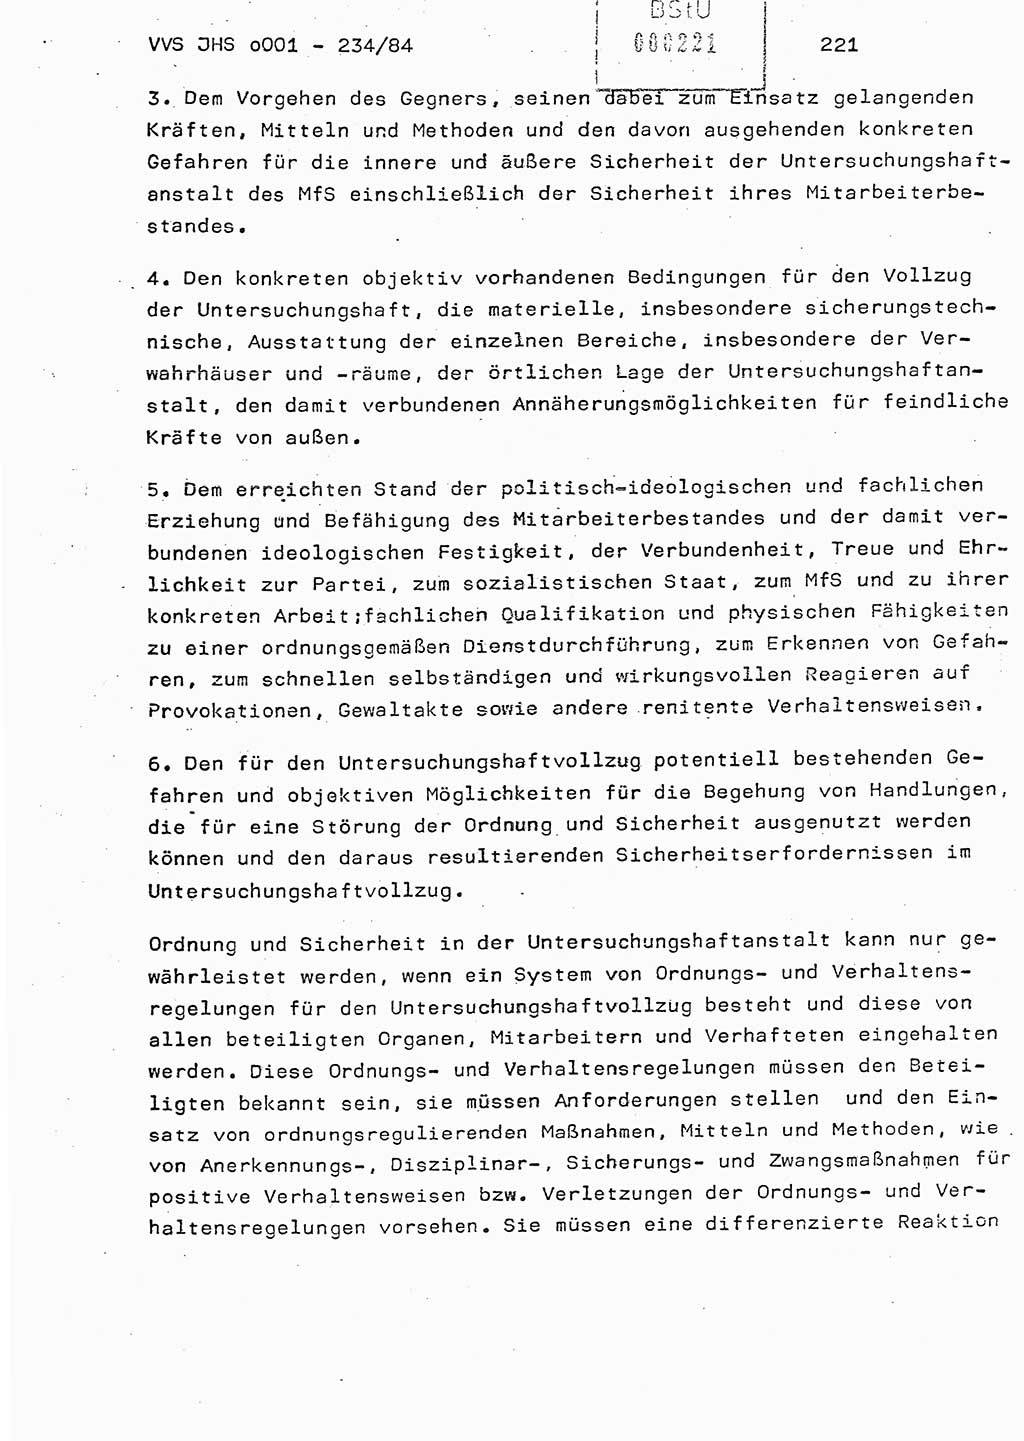 Dissertation Oberst Siegfried Rataizick (Abt. ⅩⅣ), Oberstleutnant Volkmar Heinz (Abt. ⅩⅣ), Oberstleutnant Werner Stein (HA Ⅸ), Hauptmann Heinz Conrad (JHS), Ministerium für Staatssicherheit (MfS) [Deutsche Demokratische Republik (DDR)], Juristische Hochschule (JHS), Vertrauliche Verschlußsache (VVS) o001-234/84, Potsdam 1984, Seite 221 (Diss. MfS DDR JHS VVS o001-234/84 1984, S. 221)